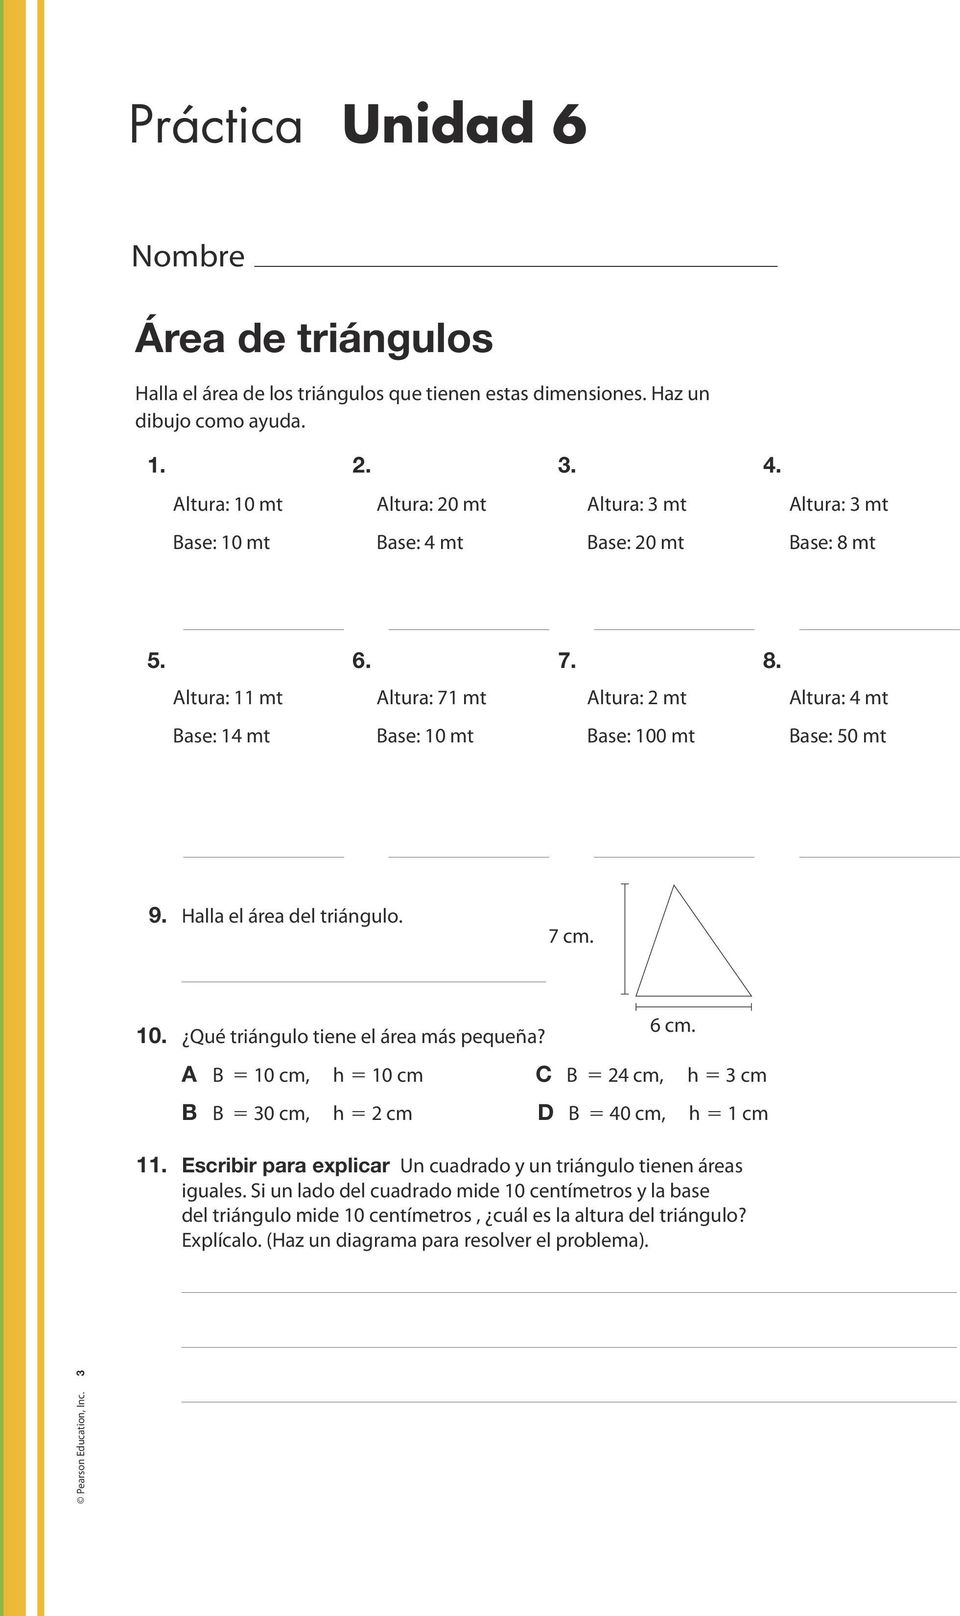 Halla el área del triángulo.. 10. Qué triángulo tiene el área más pequeña? 6 cm.